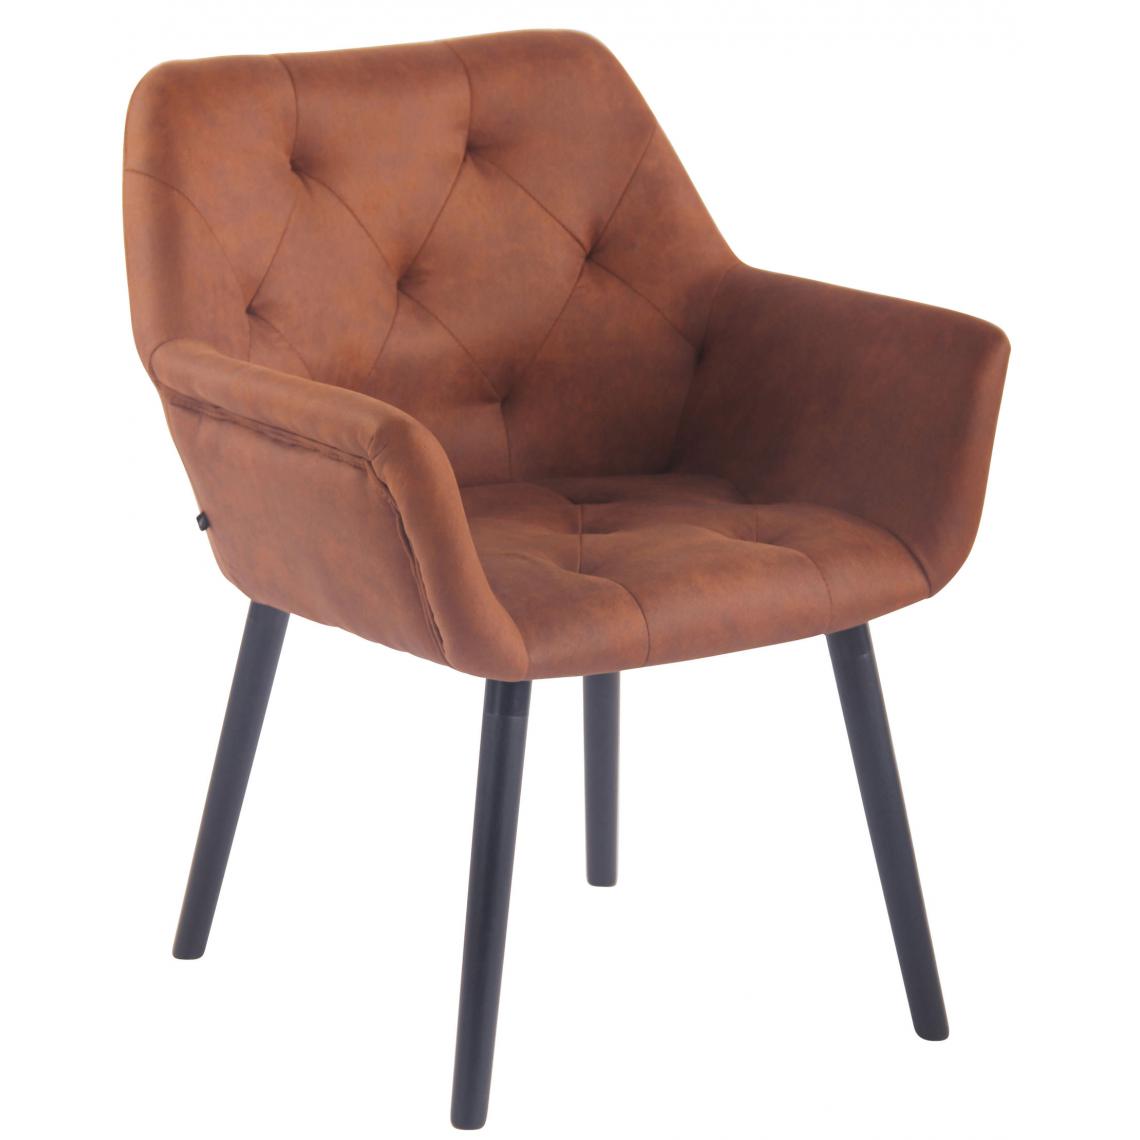 Icaverne - Superbe Chaise de salle à manger selection Khartoum Vintage cuir synthétique noir (chêne) couleur marron - Chaises